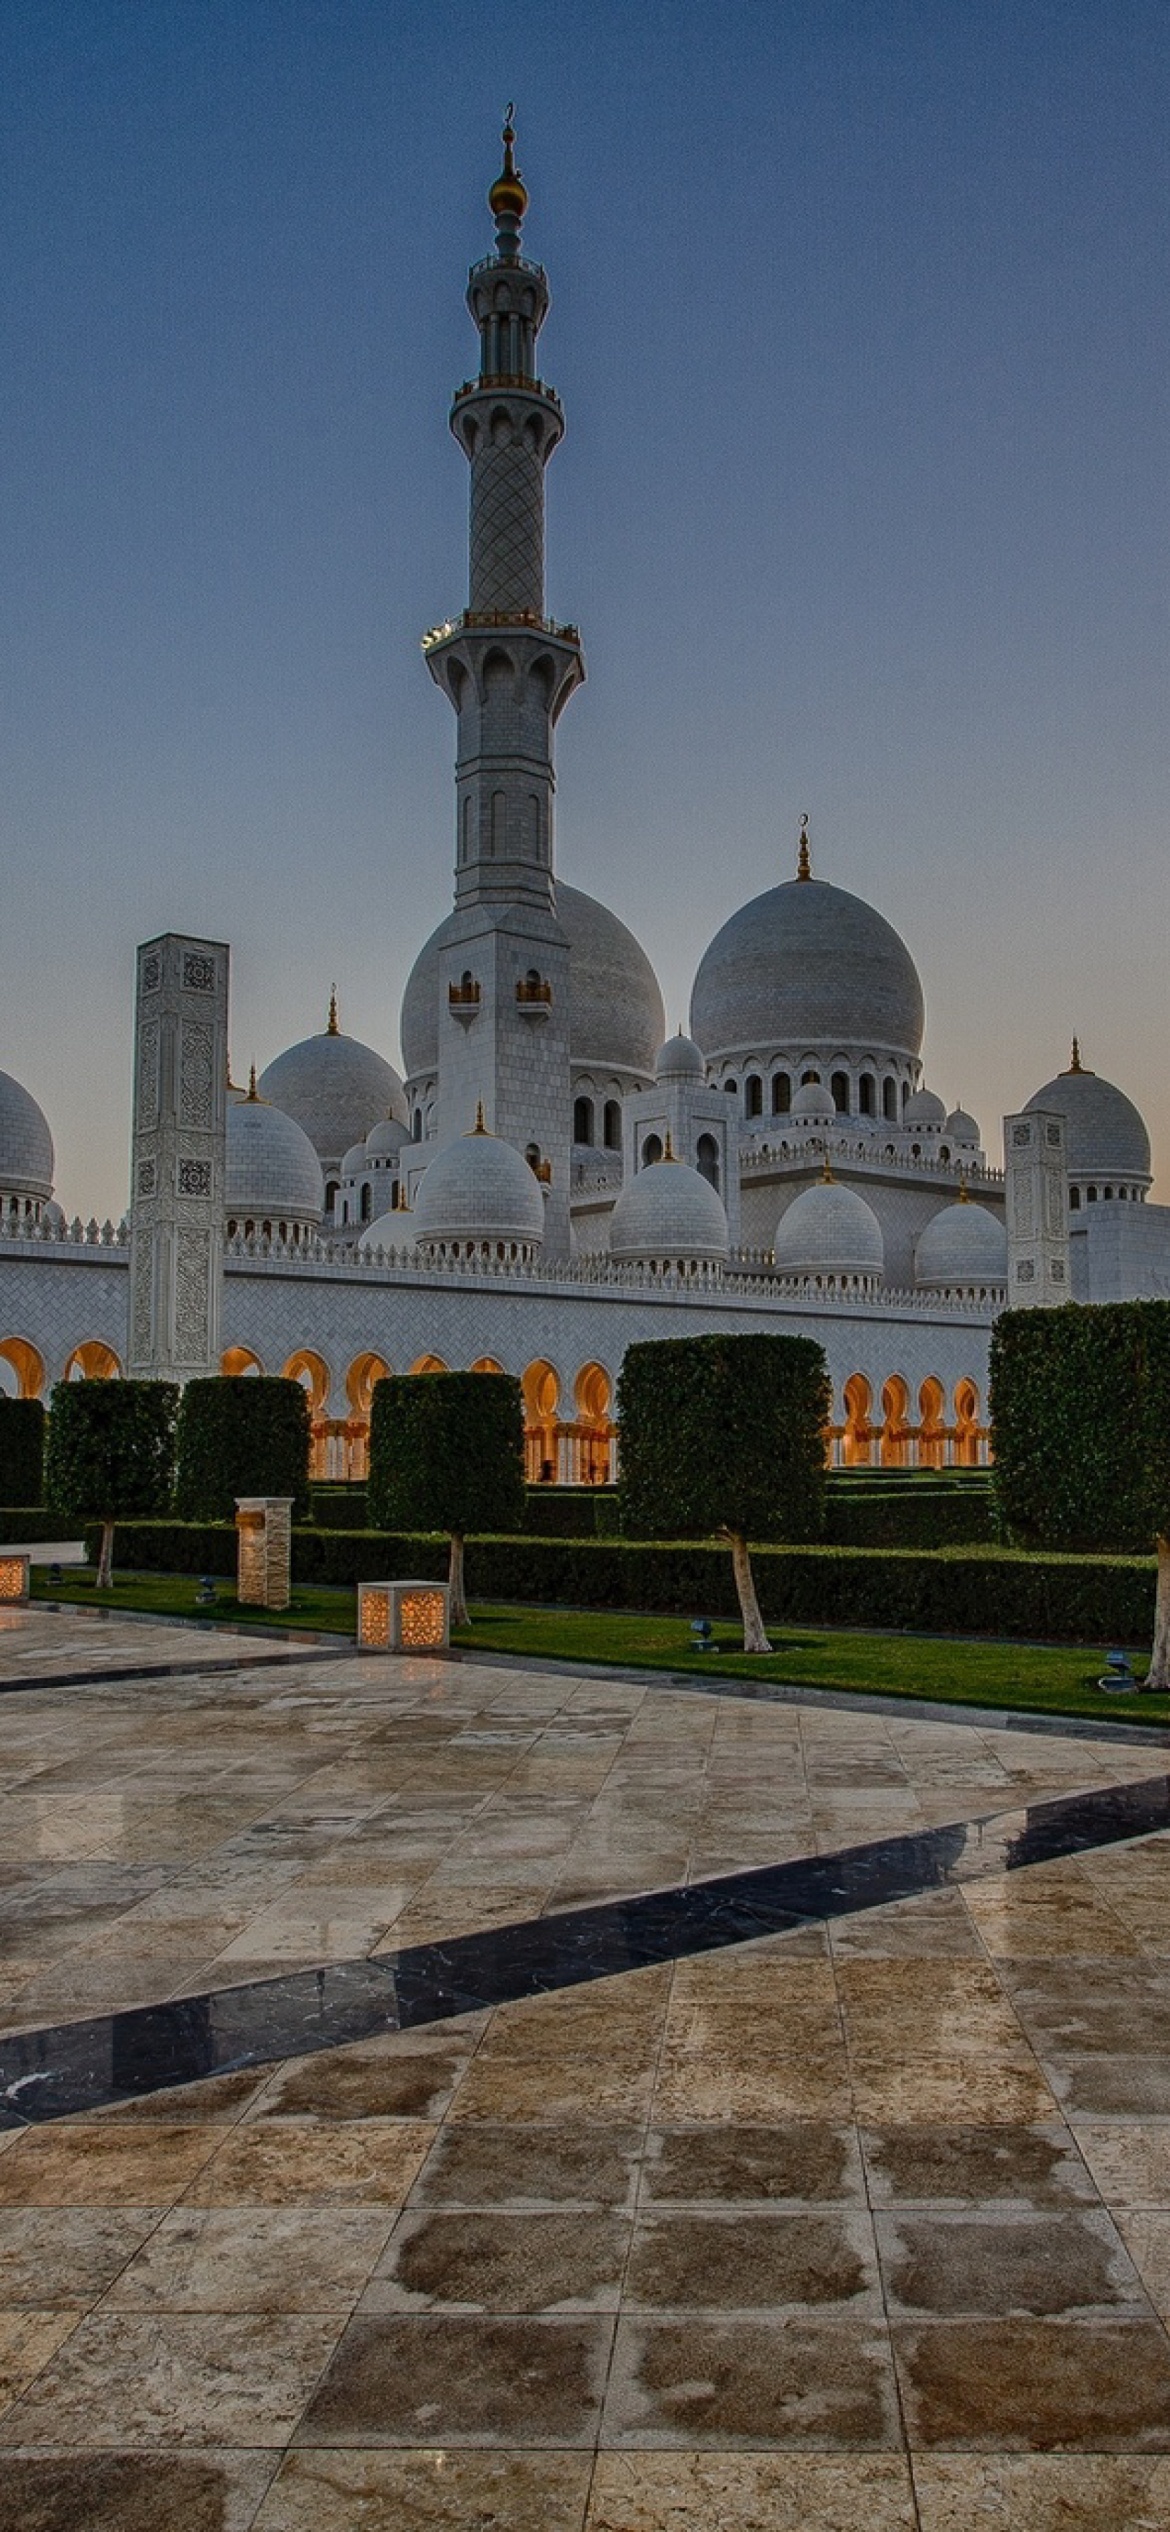 Обои Sheikh Zayed Grand Mosque in Abu Dhabi 1170x2532